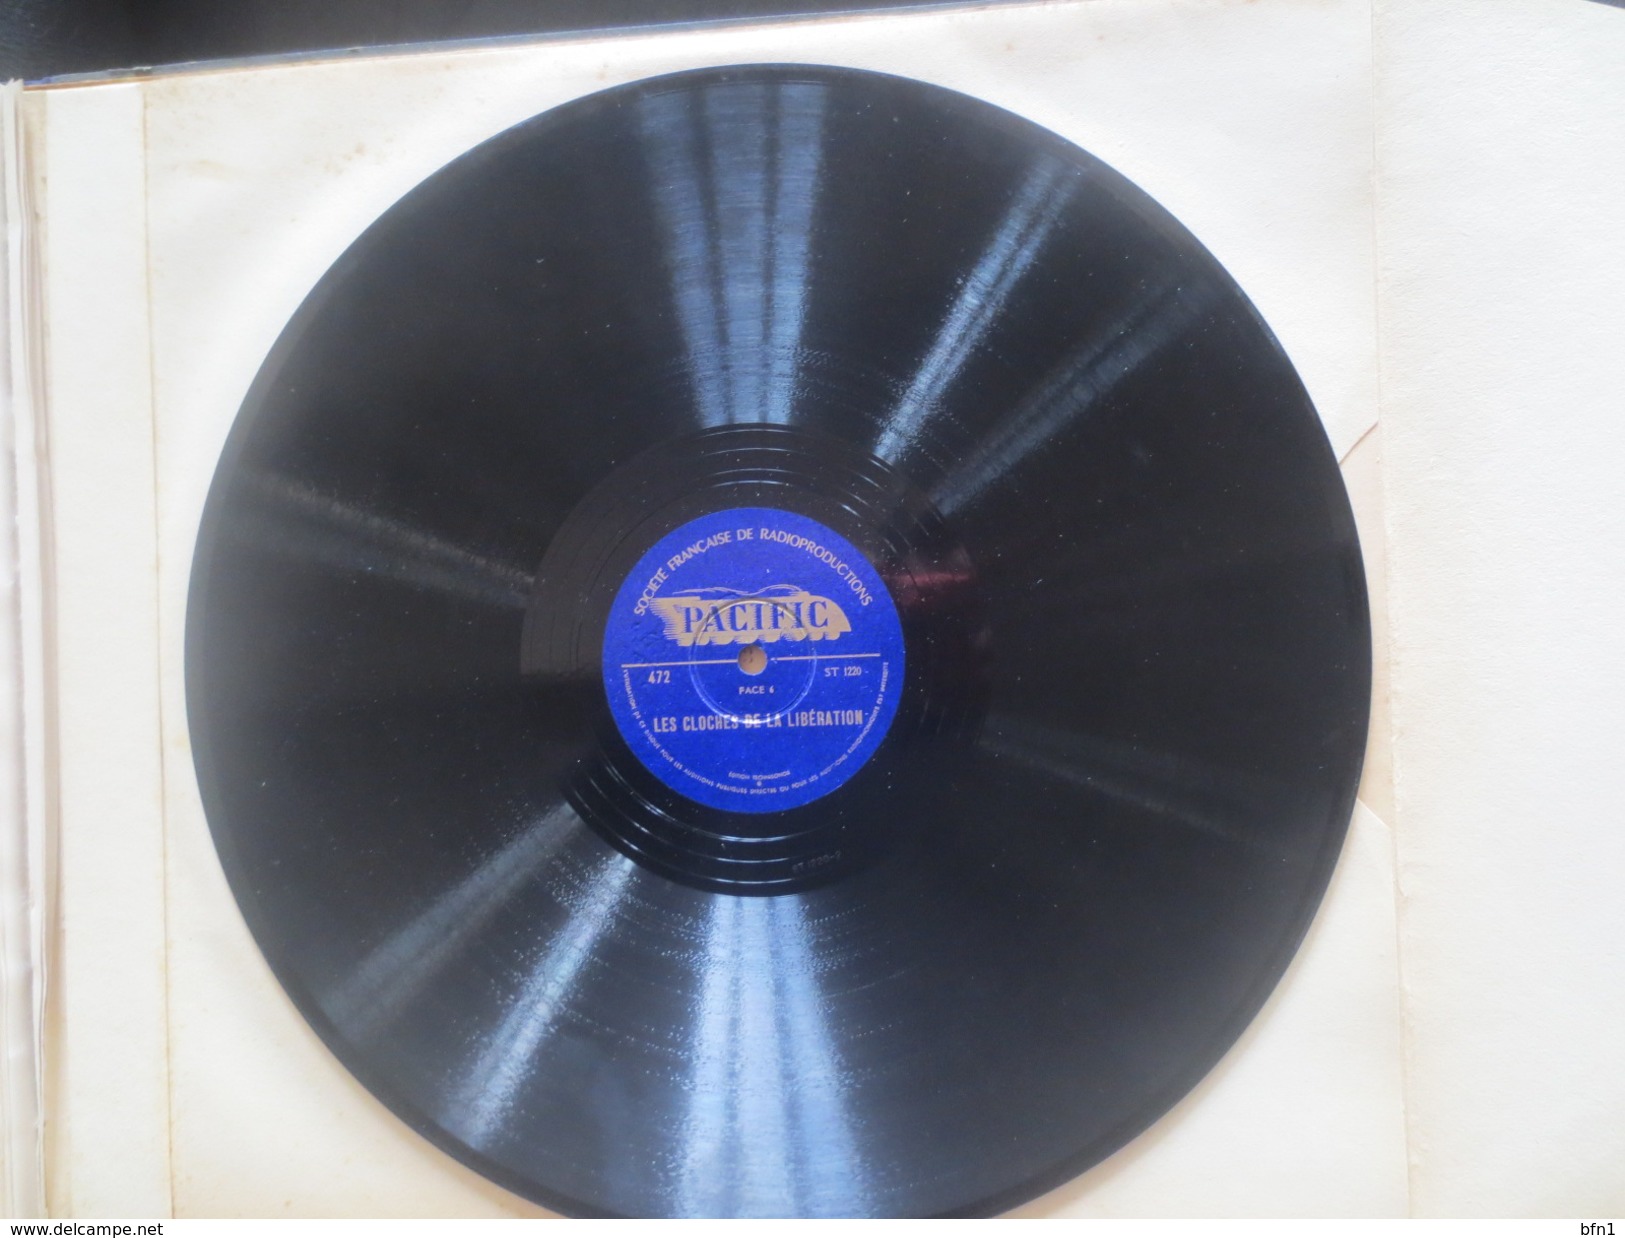 UN MICRO DANS LA BATAILLE DE PARIS 20-26 AOÛT 1944.  Édition d'avril 1945 comprenant 4 disques 78 tours - VOIR PHOTOS